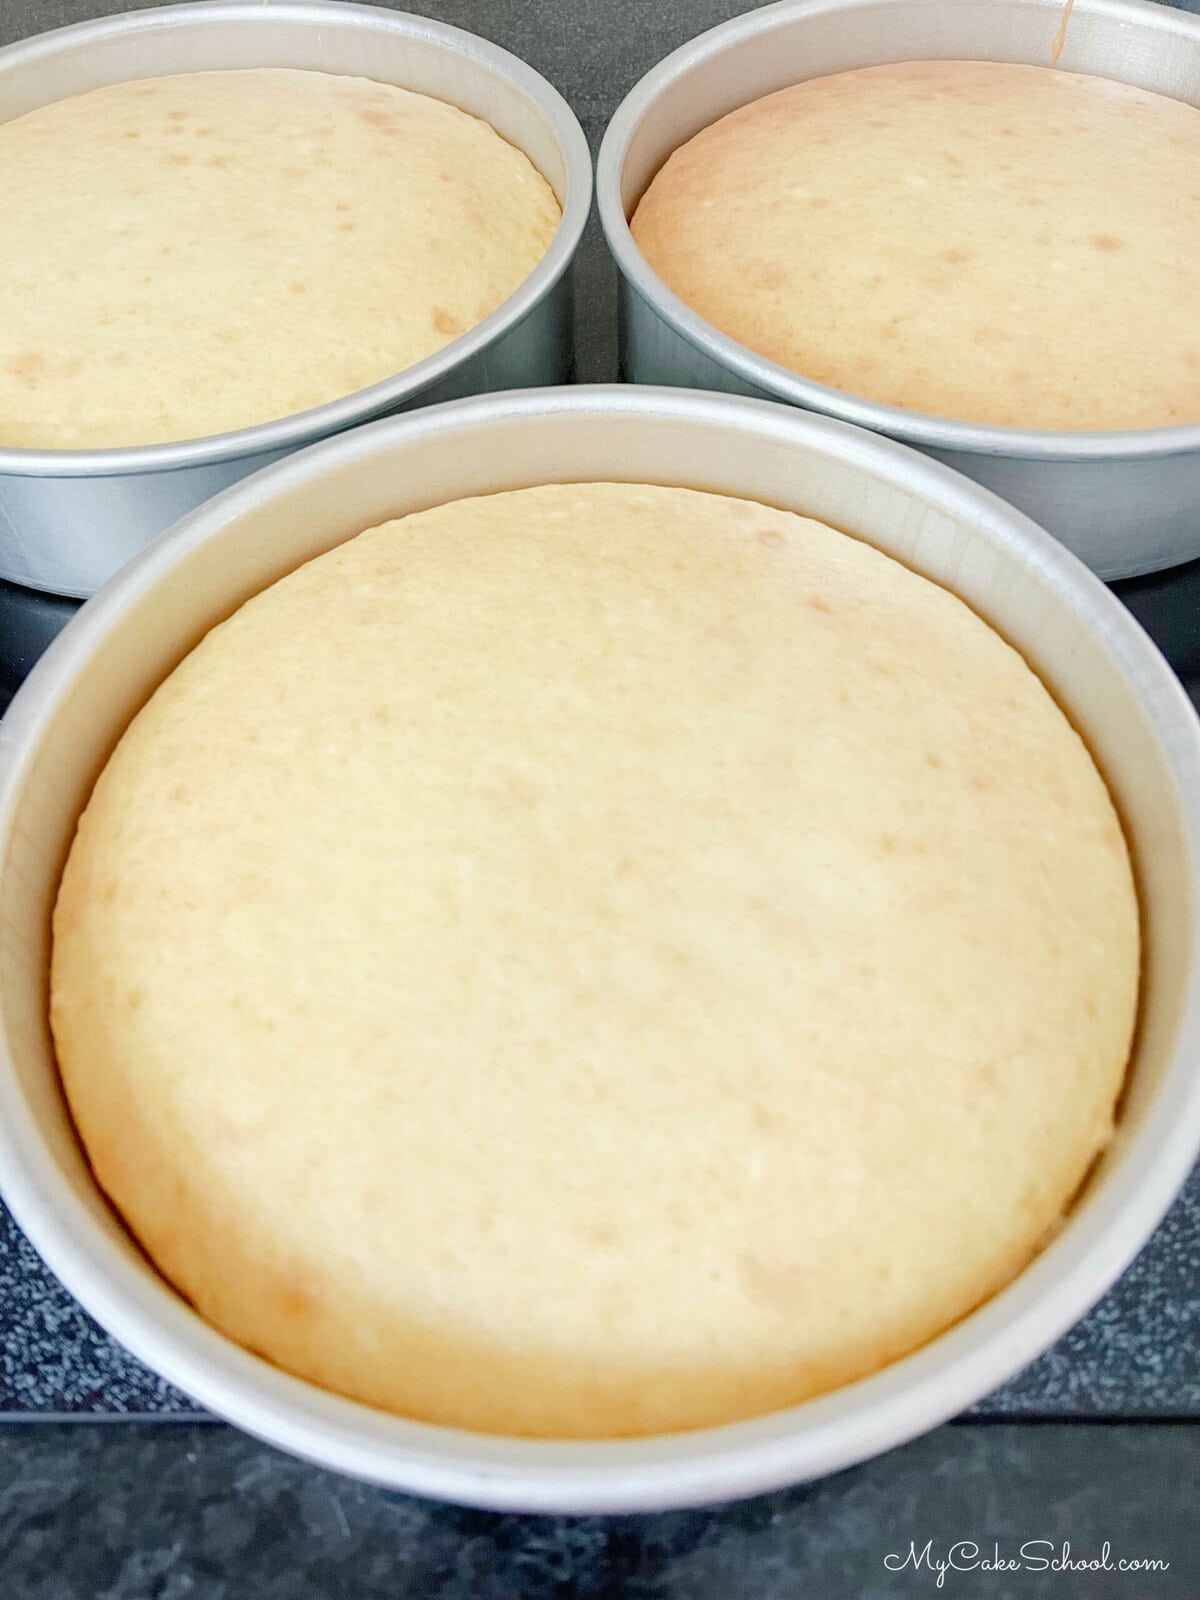 Three lemon cream cake layers fresh from the oven.